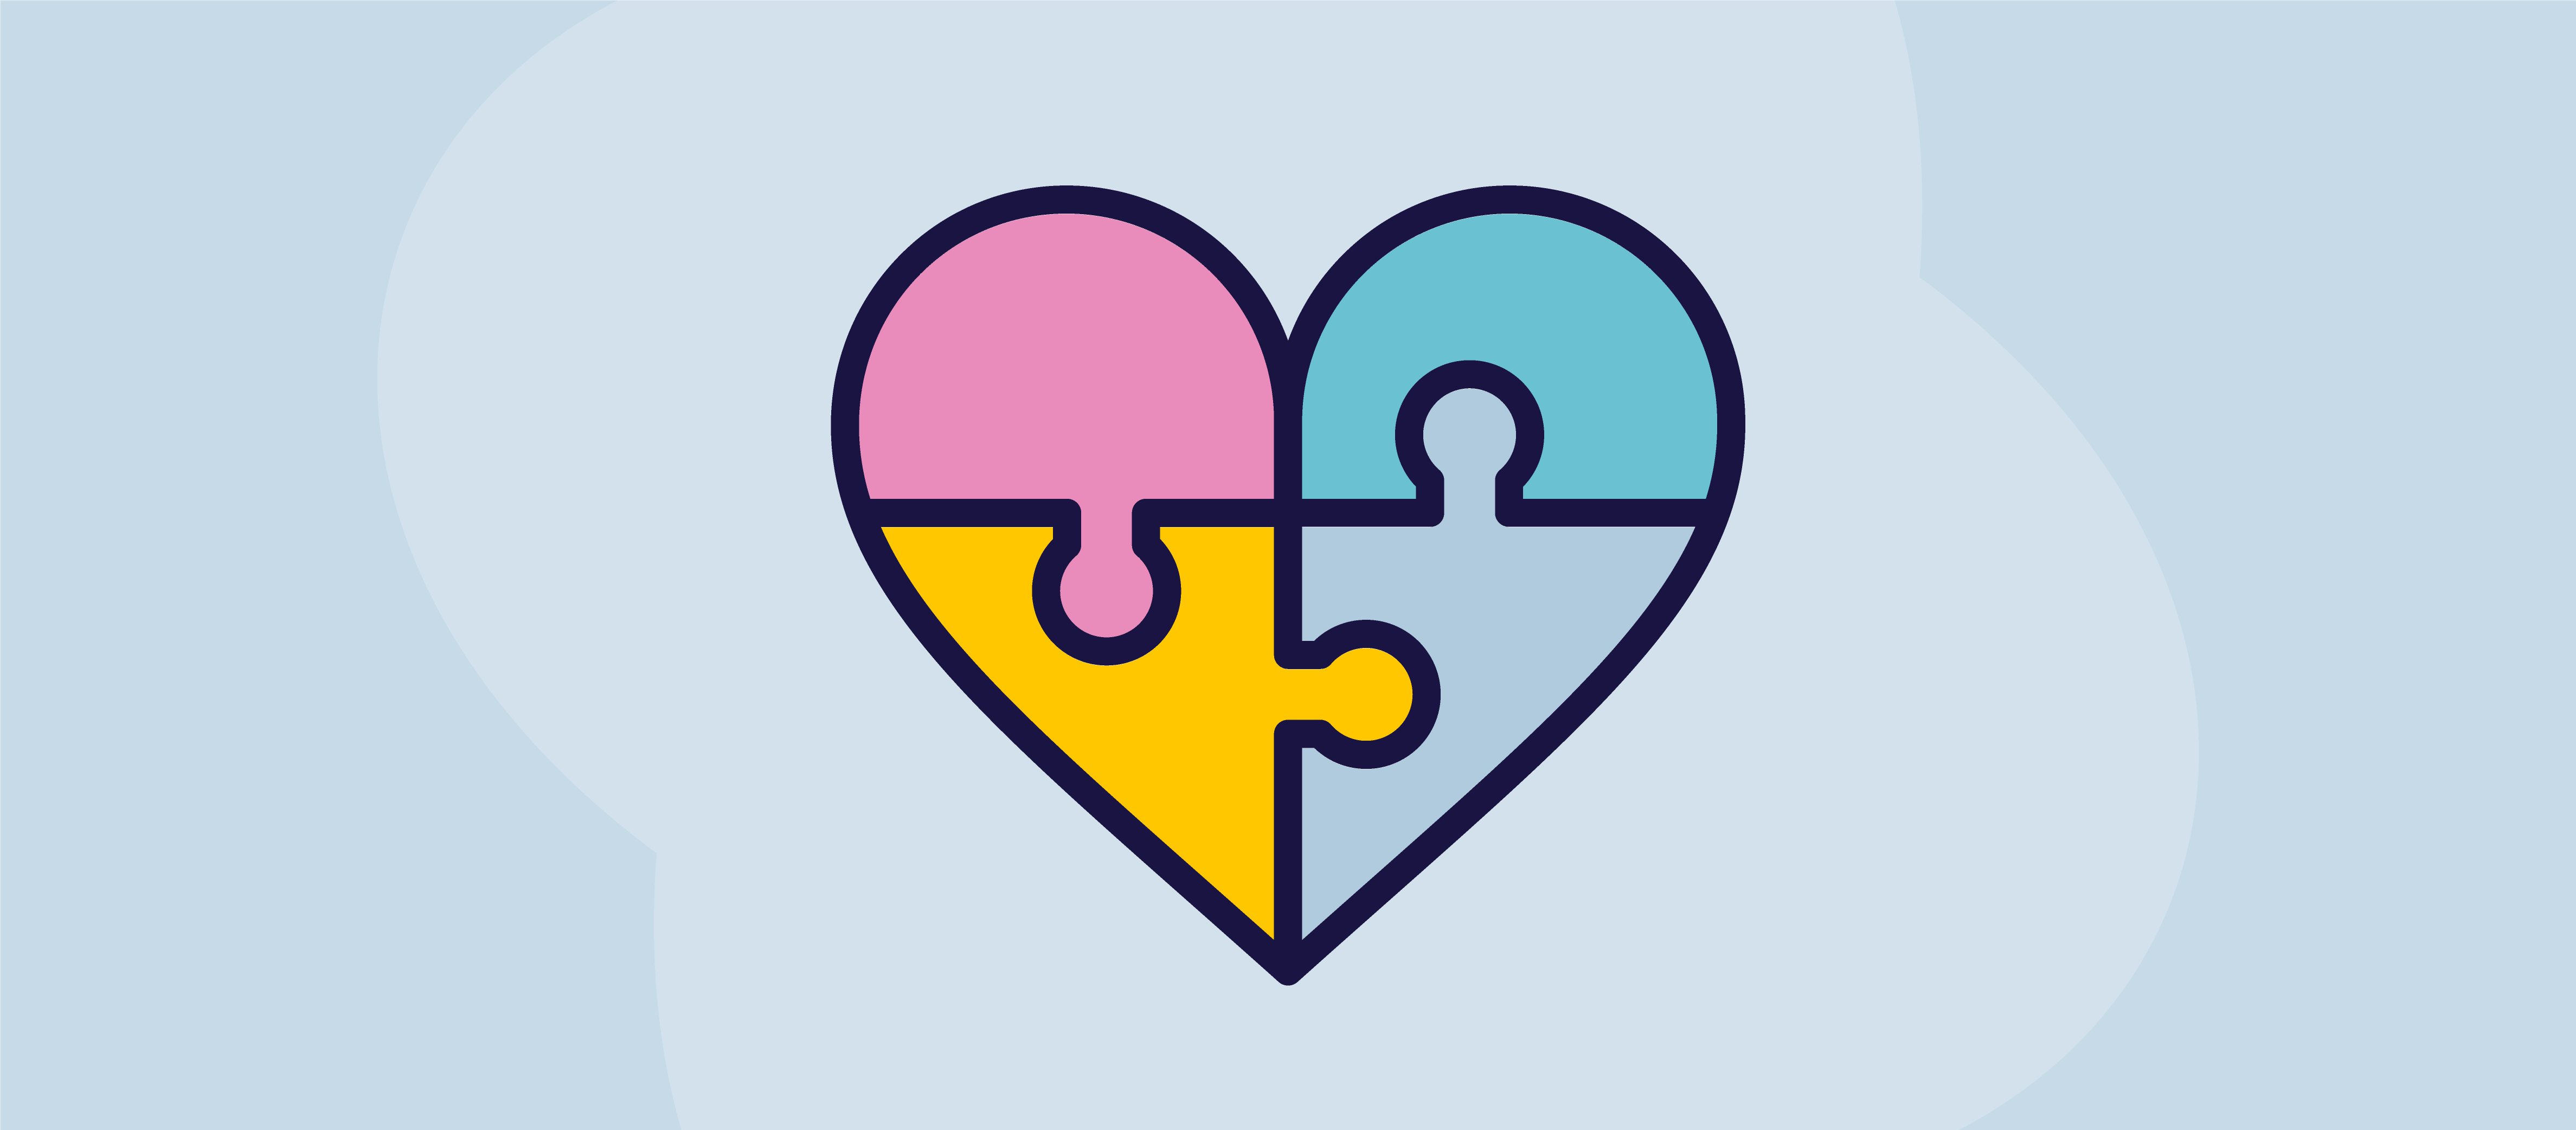 En illustrasjon av et hjerte som et puslespill med fire brikker i ulike farger som skal settes sammen for å gjøre det komplett.